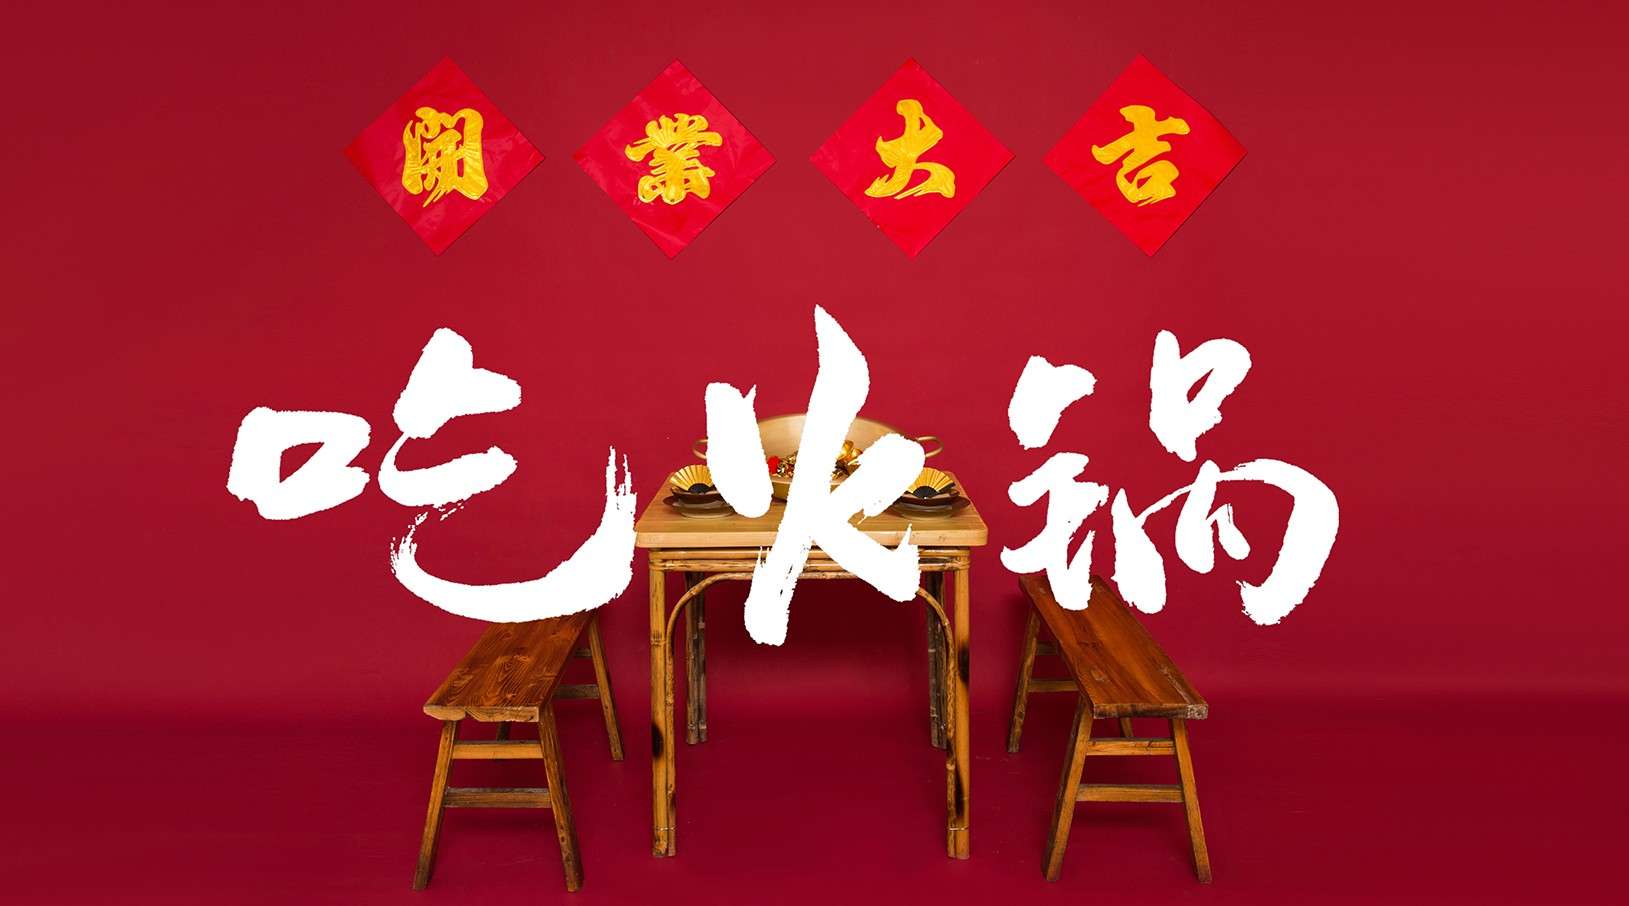 妖艳儿成都系列 CHENG DU | 红尘滚滚，“吃吃”情深 —— 吃火锅